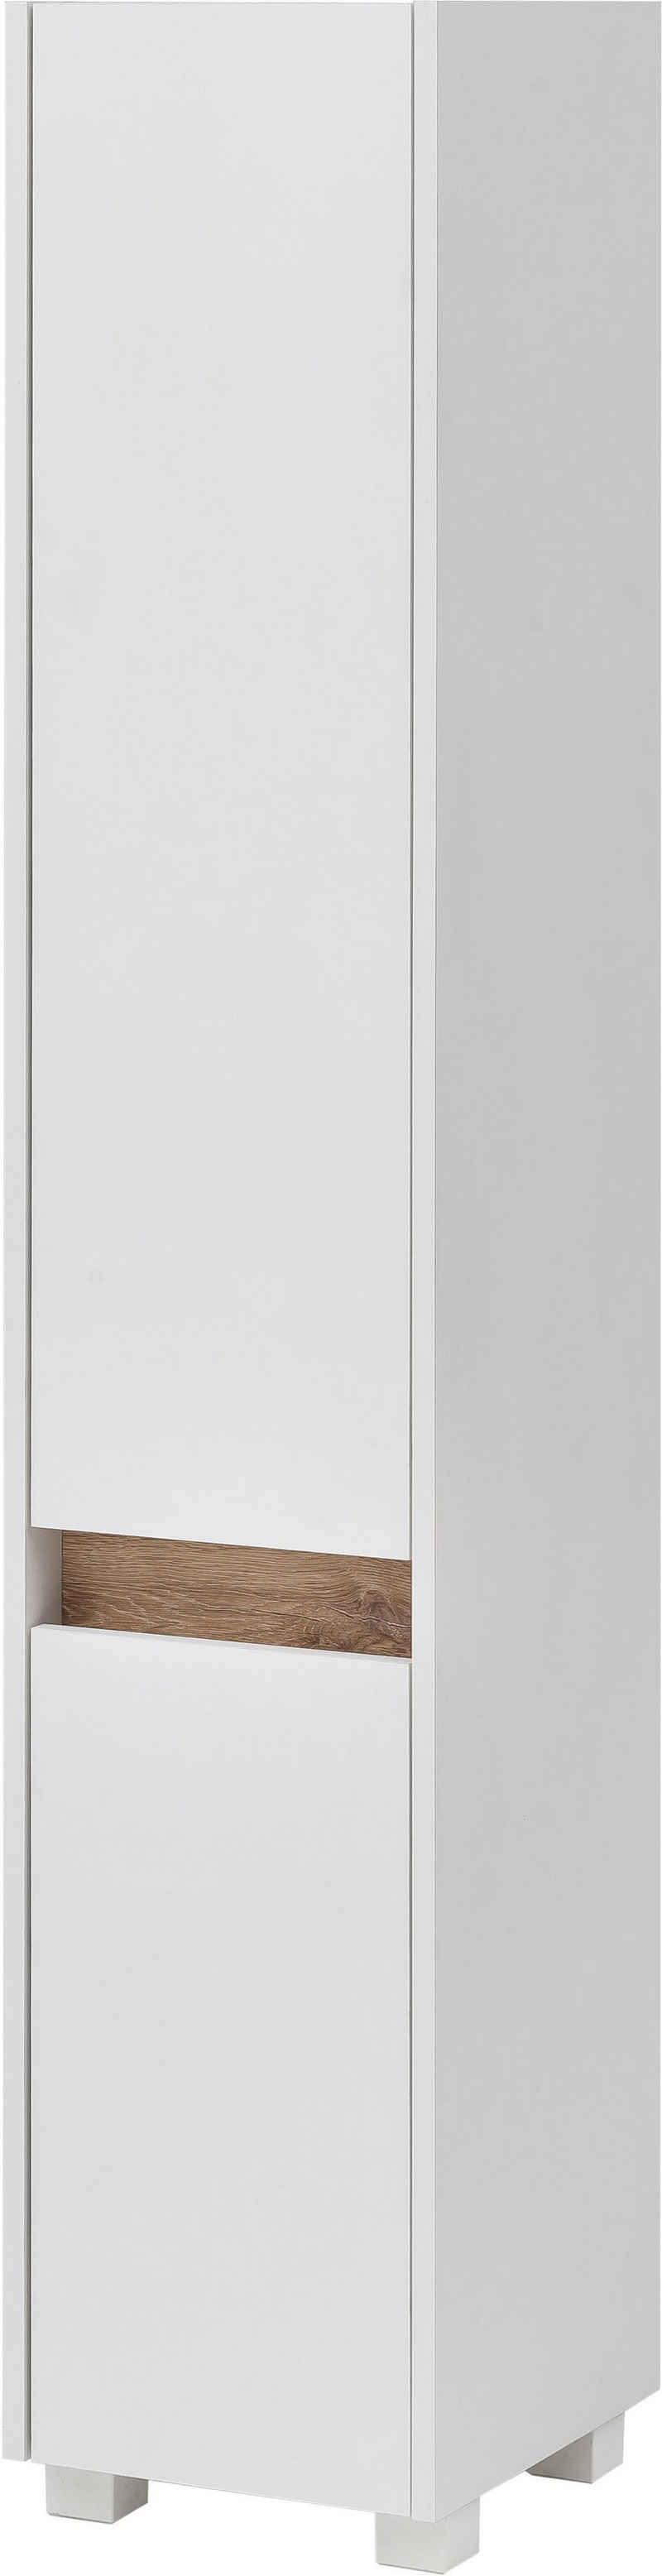 Schildmeyer Hochschrank Cosmo Höhe 164,5 cm, Badezimmerschrank, Blende im modernen Wildeiche-Look